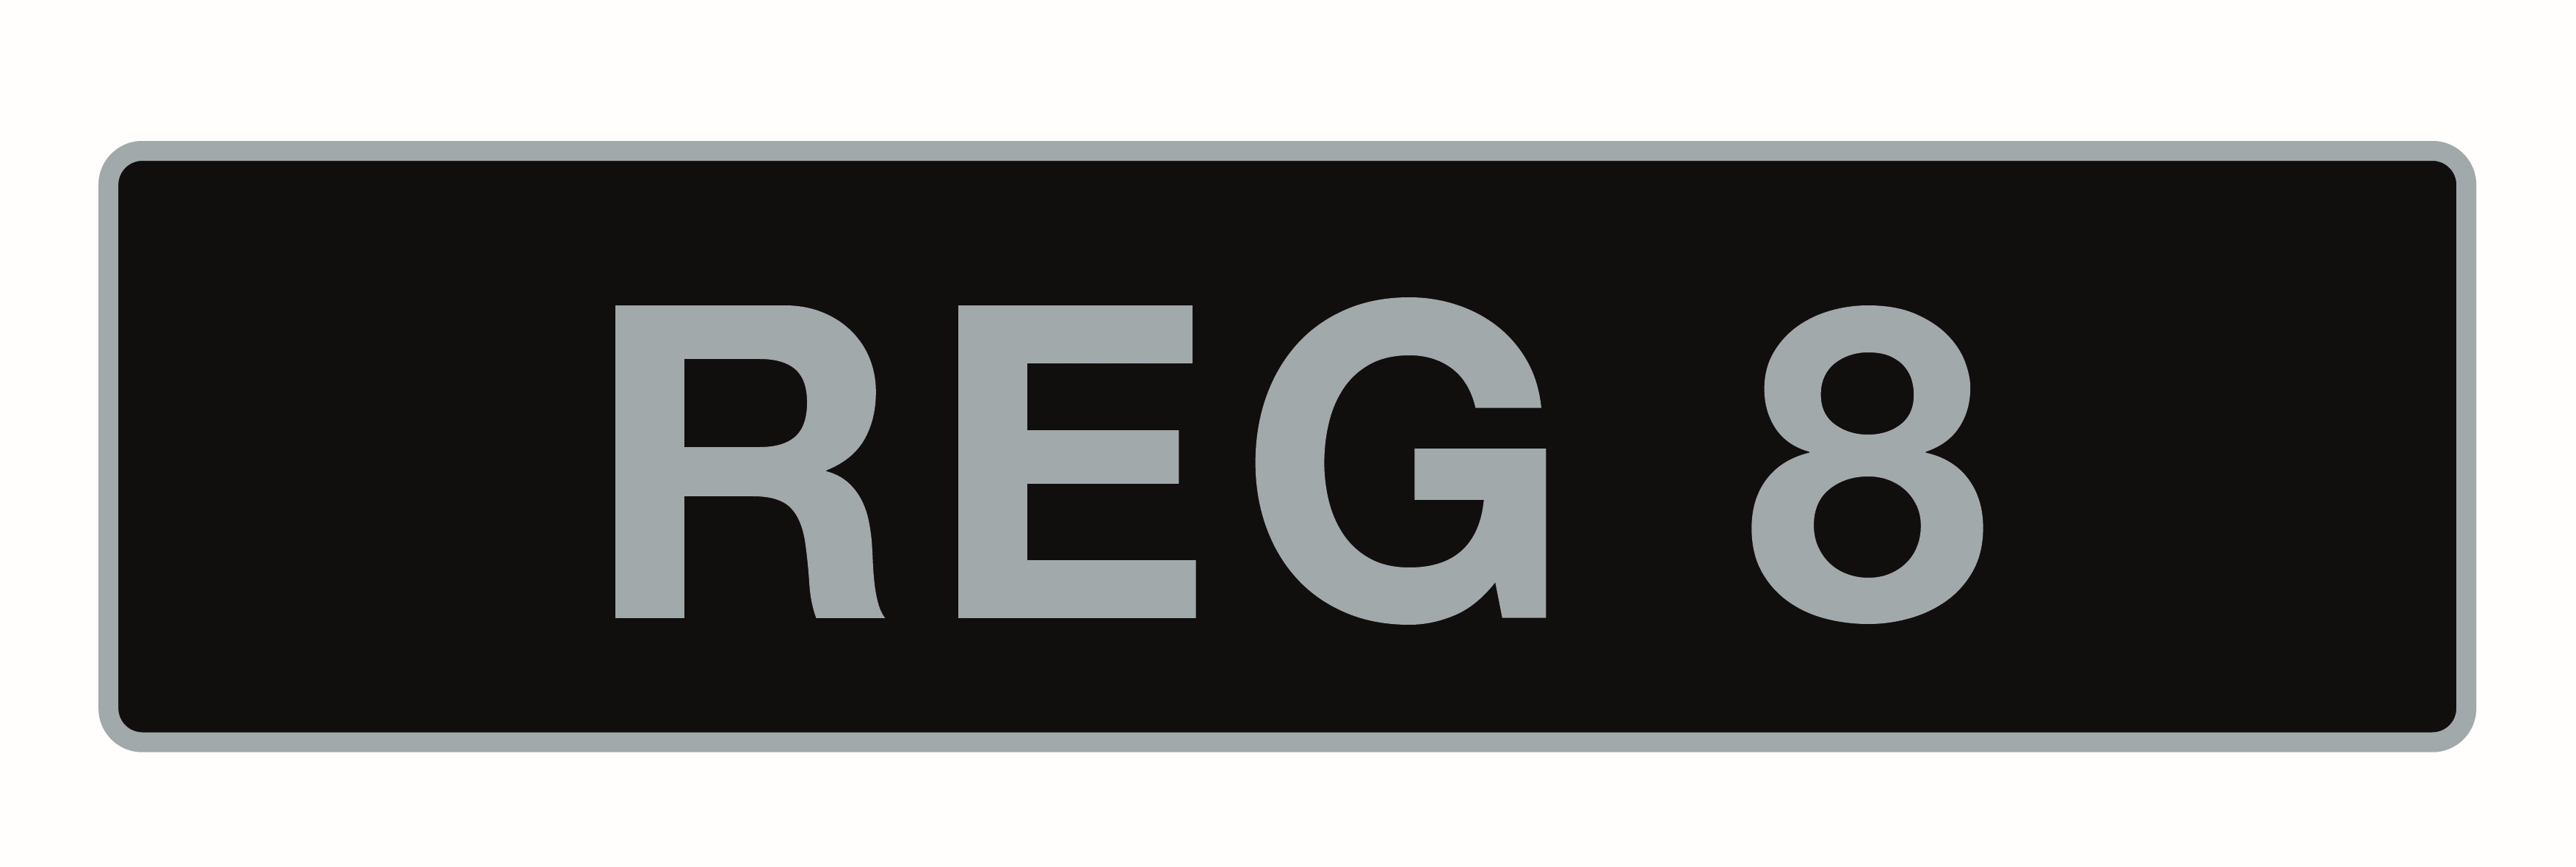 'REG 8', UK Vehicle Registration Number,